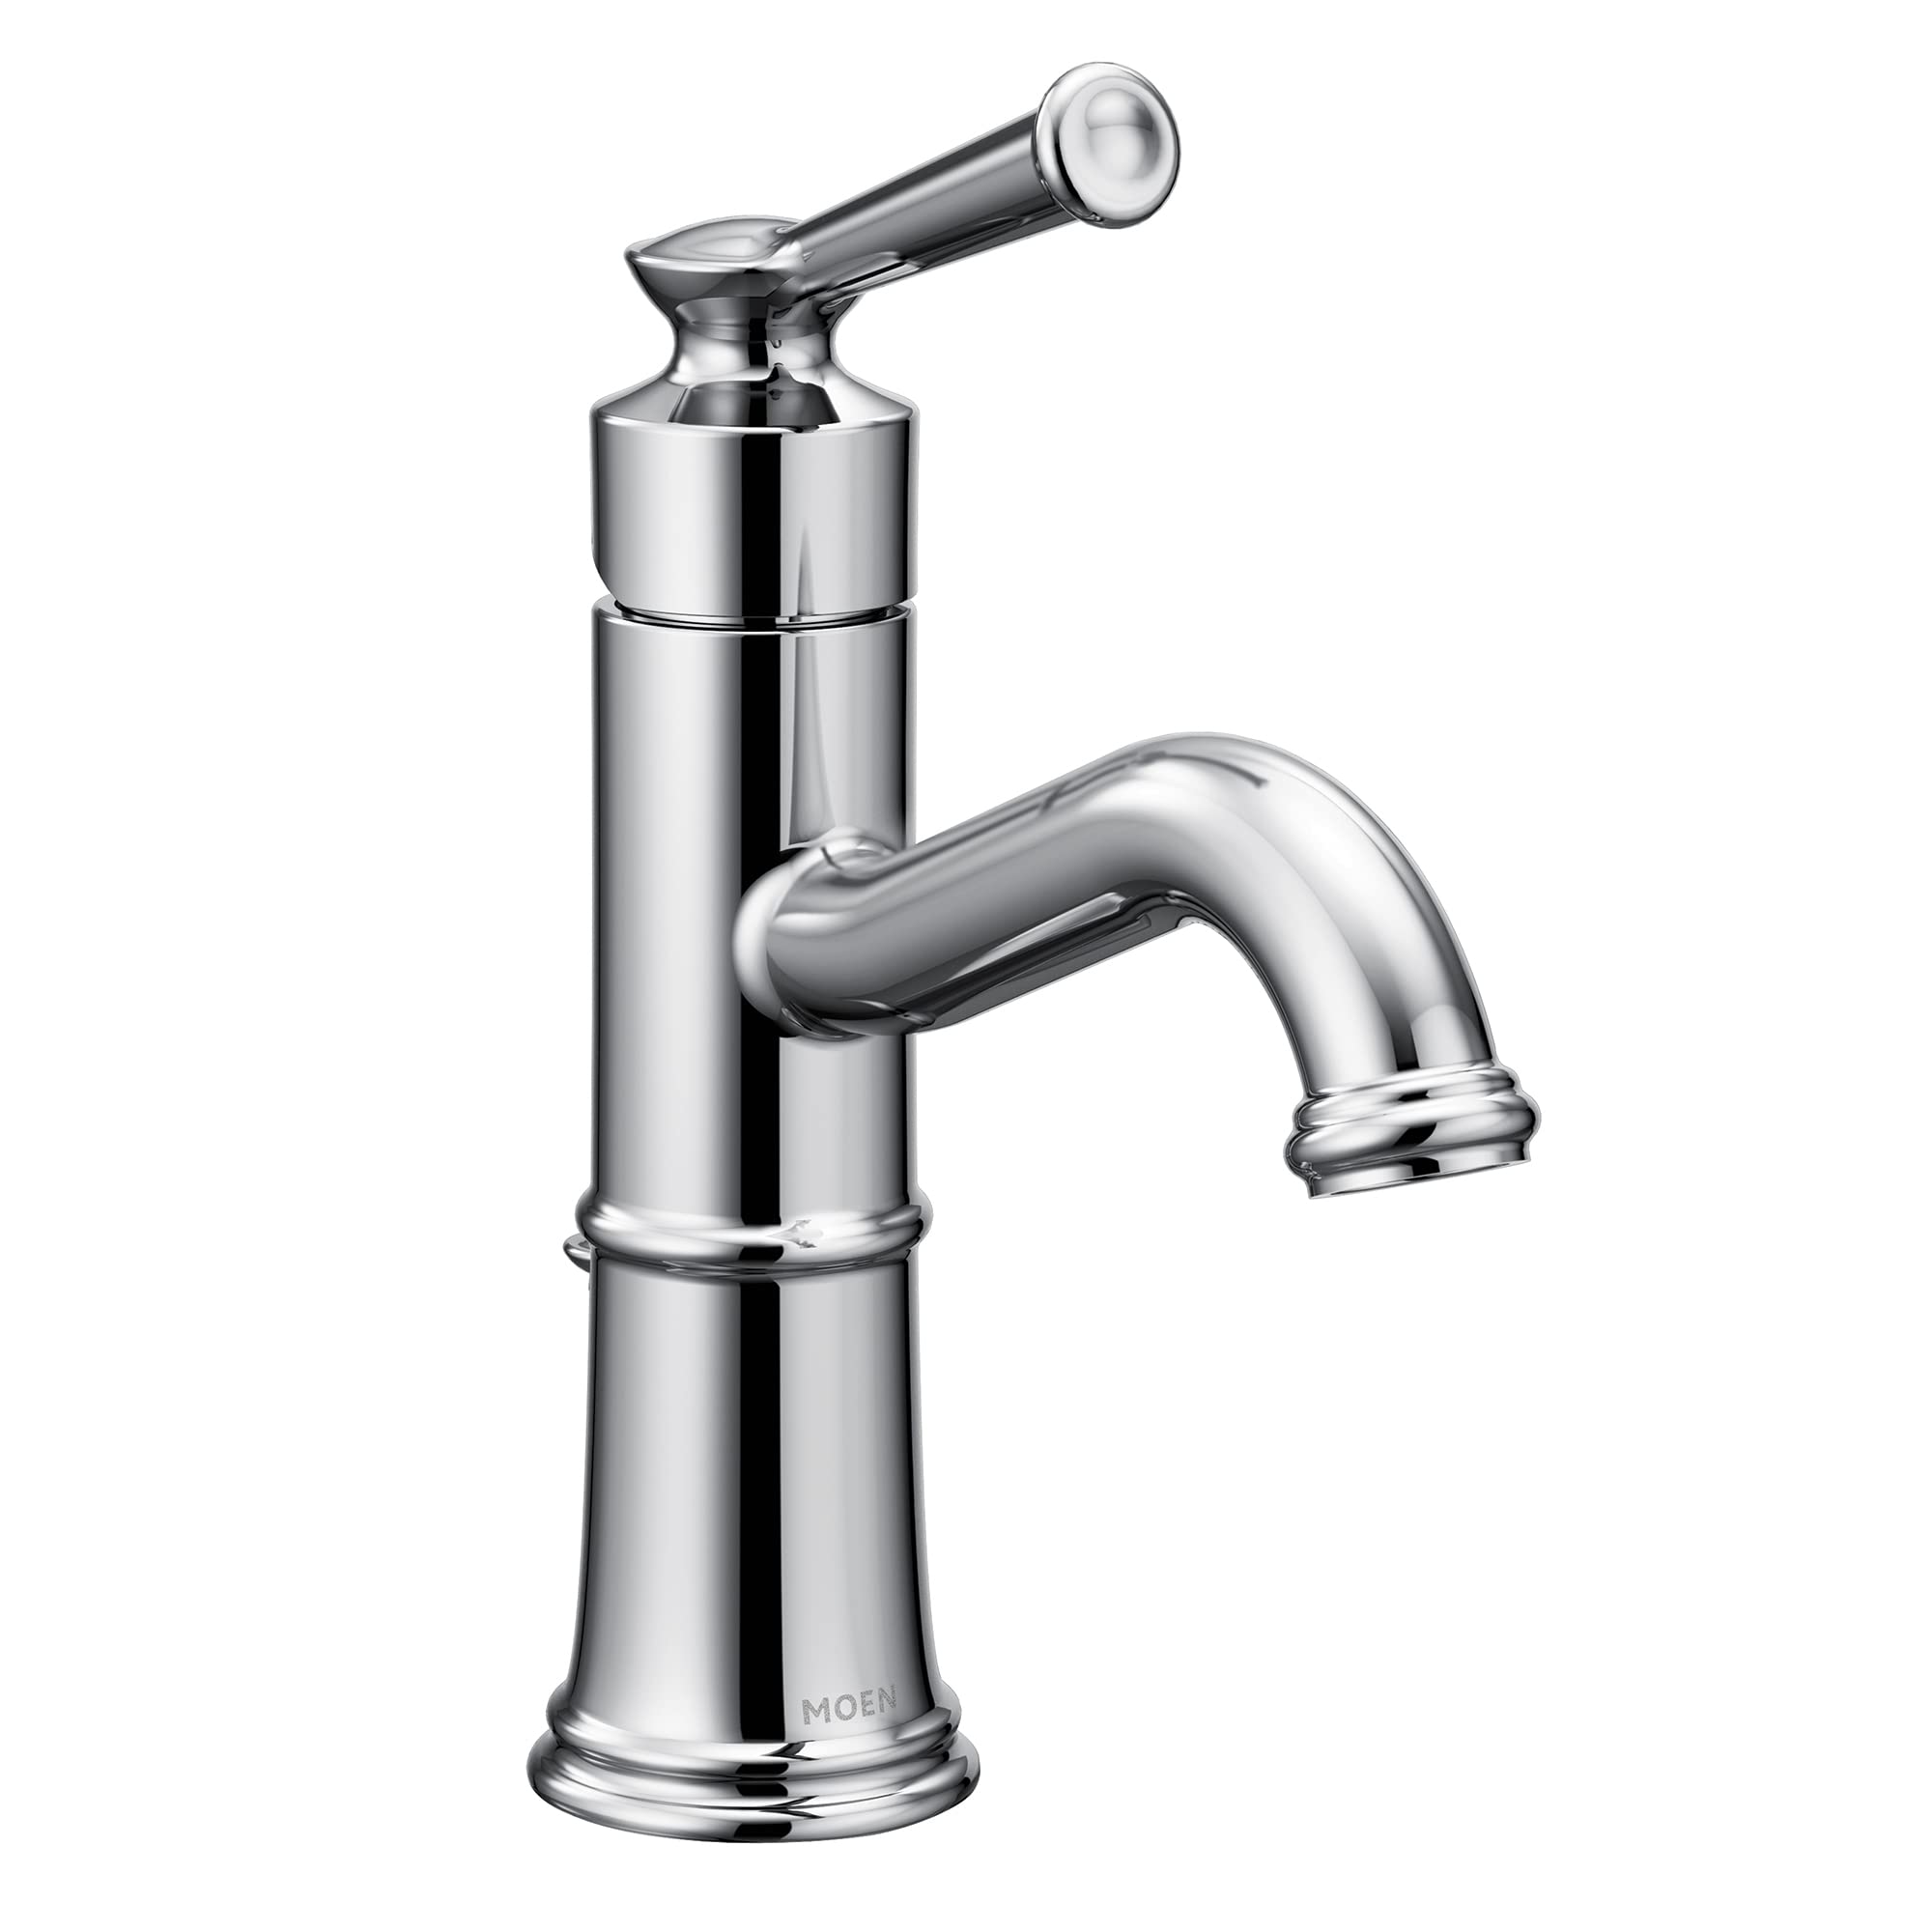 Moen Belfield Chrome One-Handle Bathroom Faucet, 6402